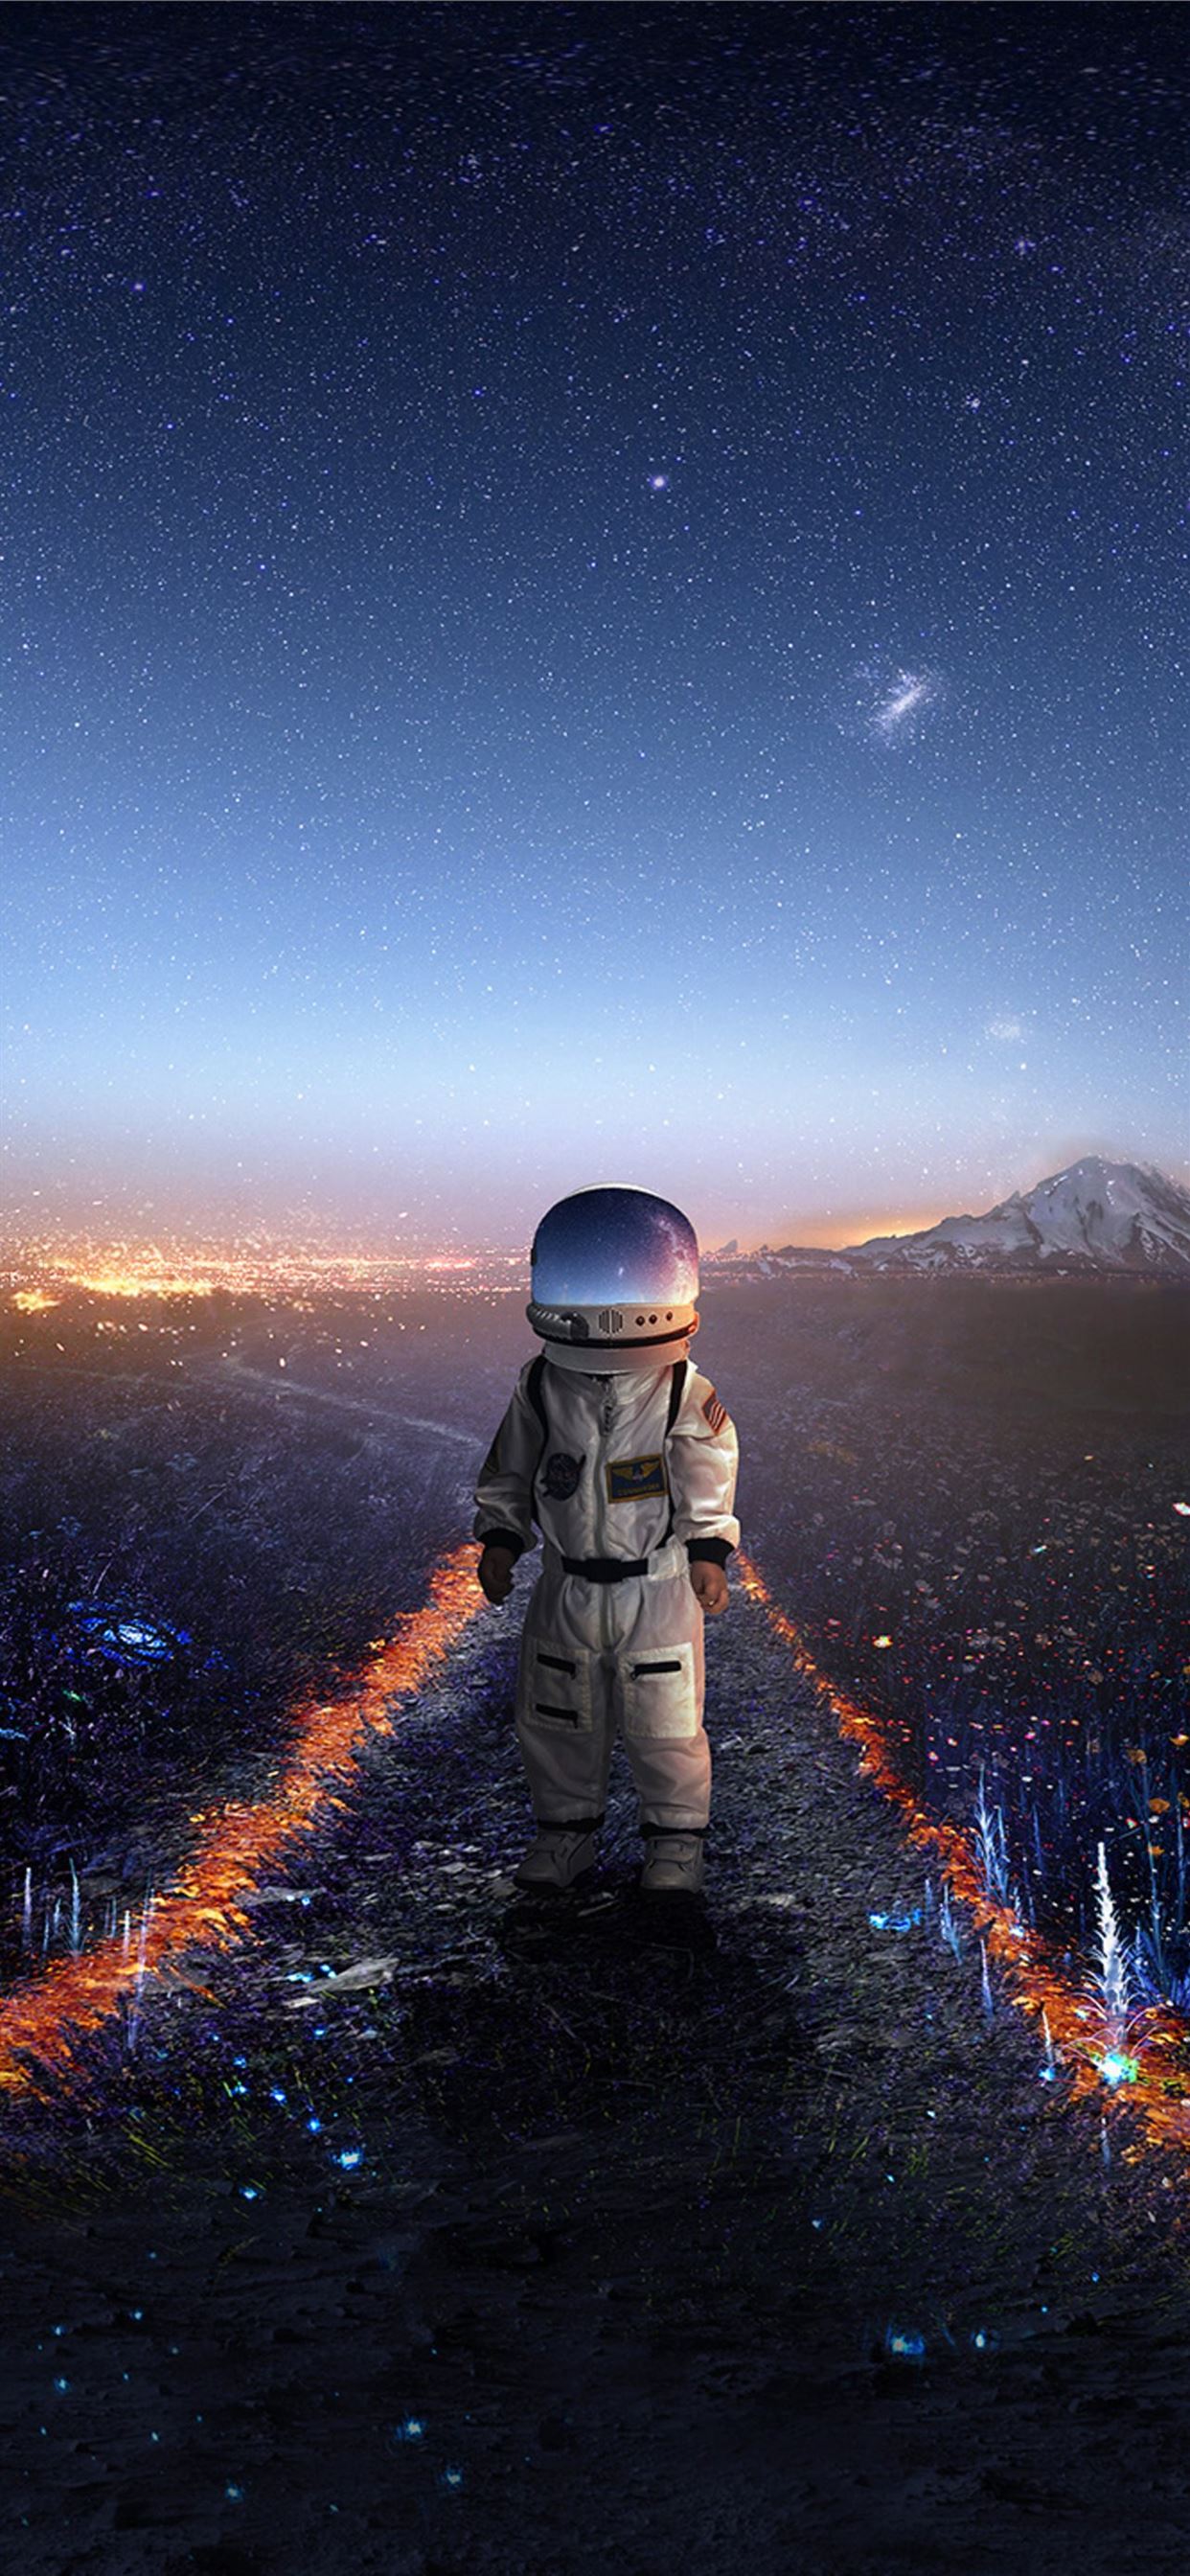 Earth In Hands Of Astronaut IPhone Wallpaper HD  IPhone Wallpapers   iPhone Wallpapers